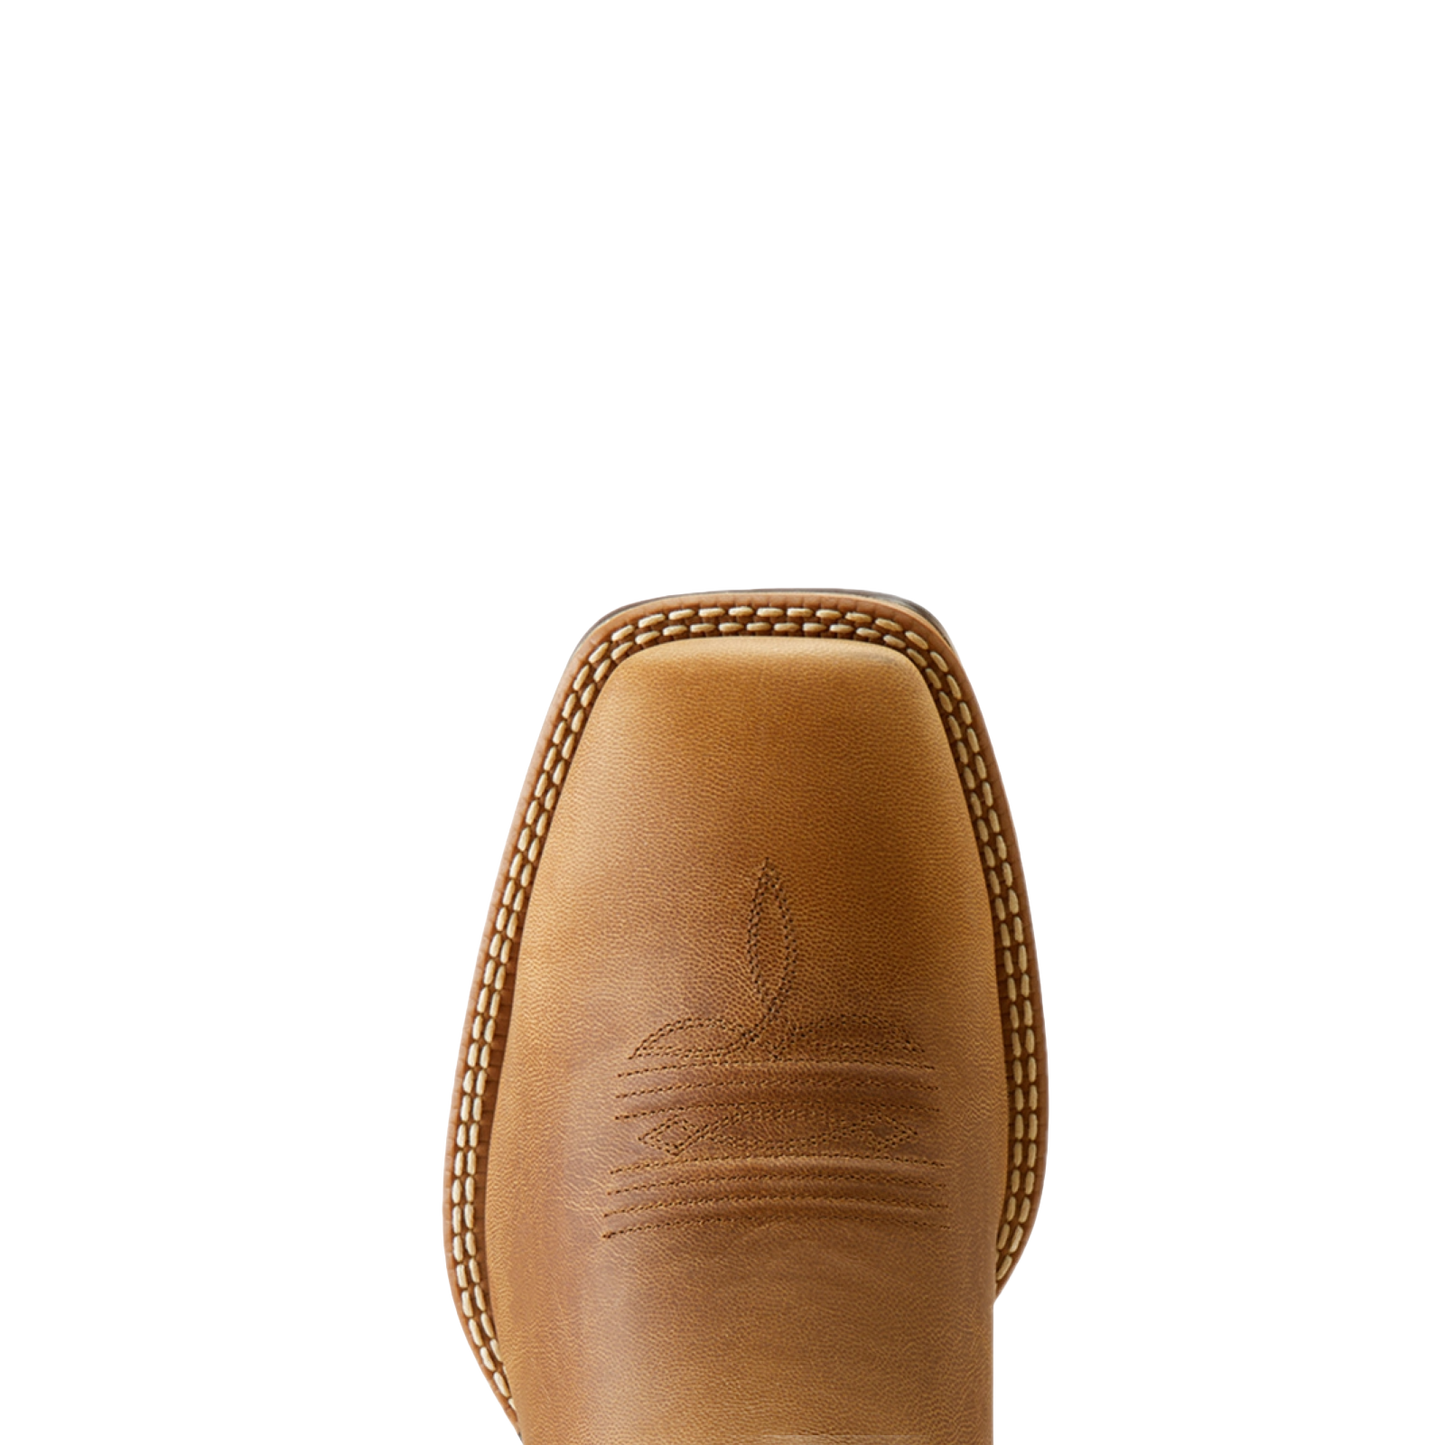 Ariat Men's Rowder VentTEK 360° Marbled Tan & White Western Boots 10050905